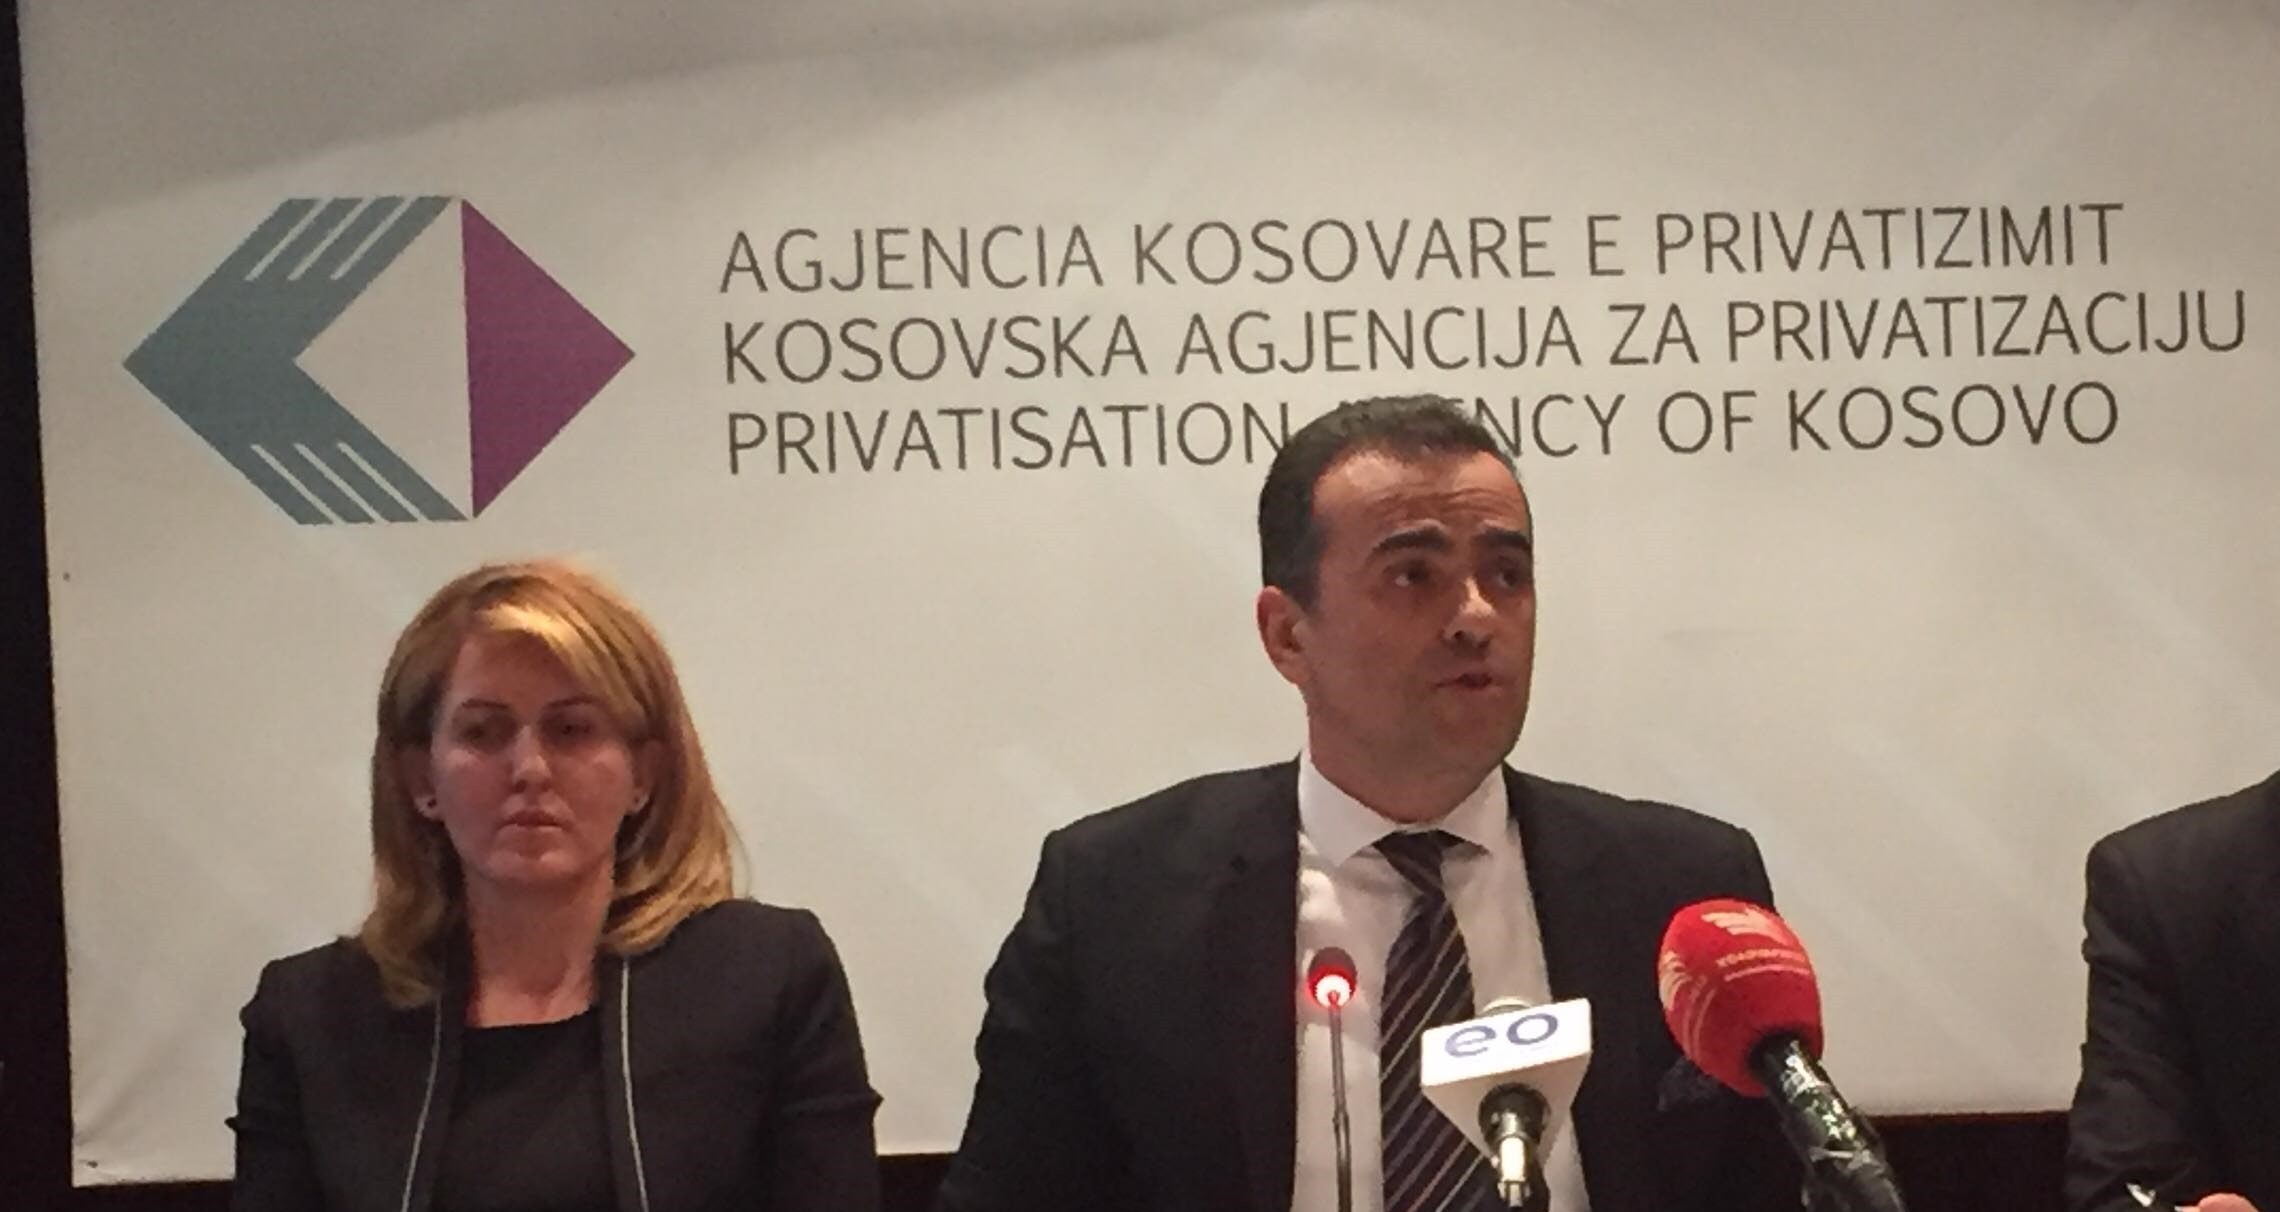 AKP planifikon përmbylljen e privatizimit brenda 7 viteve